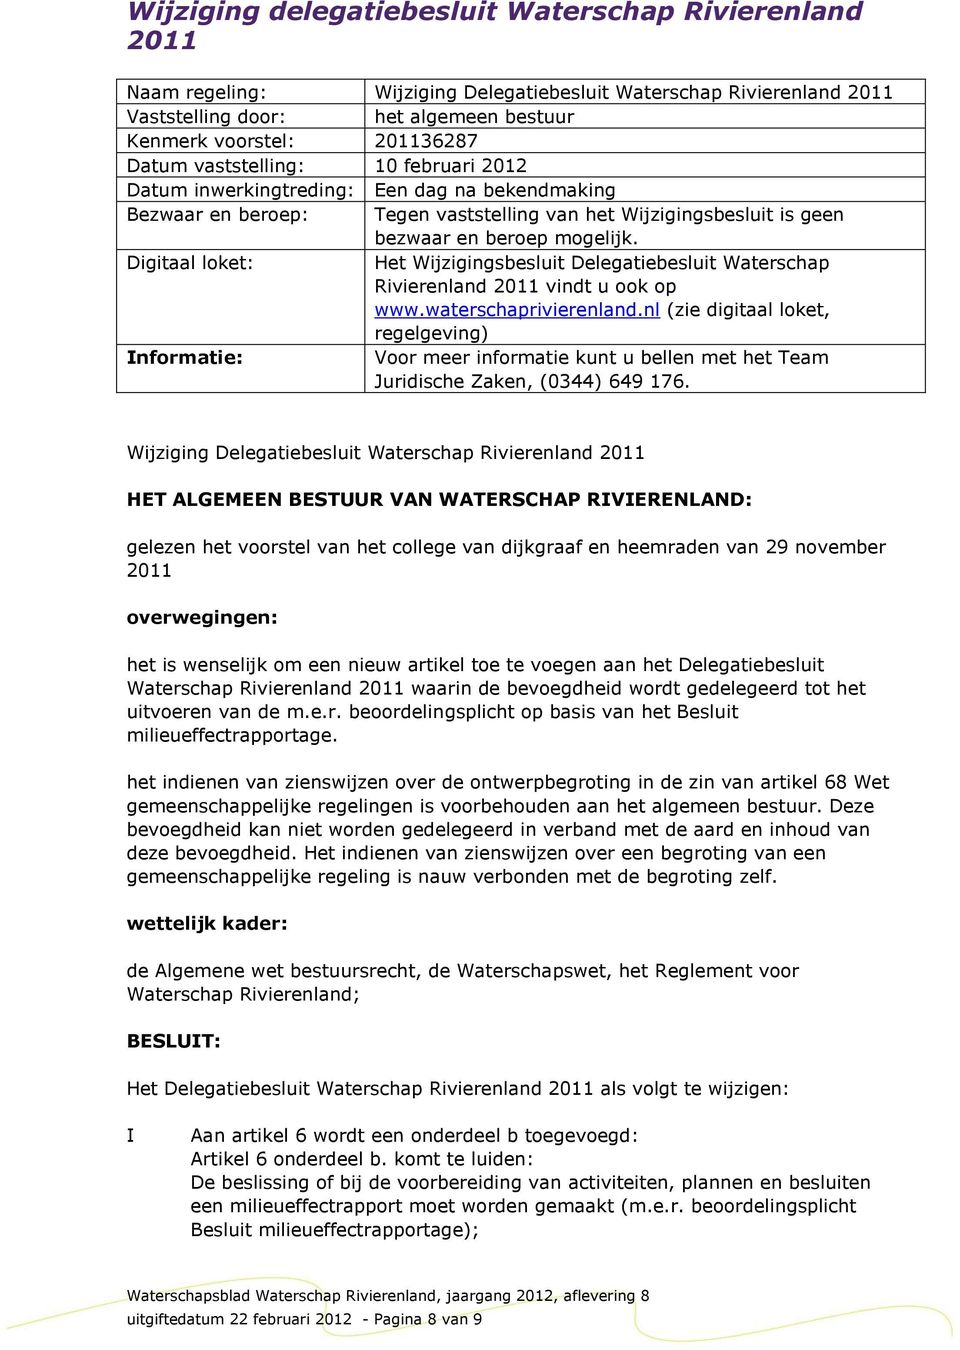 Digitaal loket: Het Wijzigingsbesluit Delegatiebesluit Waterschap Rivierenland 2011 vindt u ook op www.waterschaprivierenland.